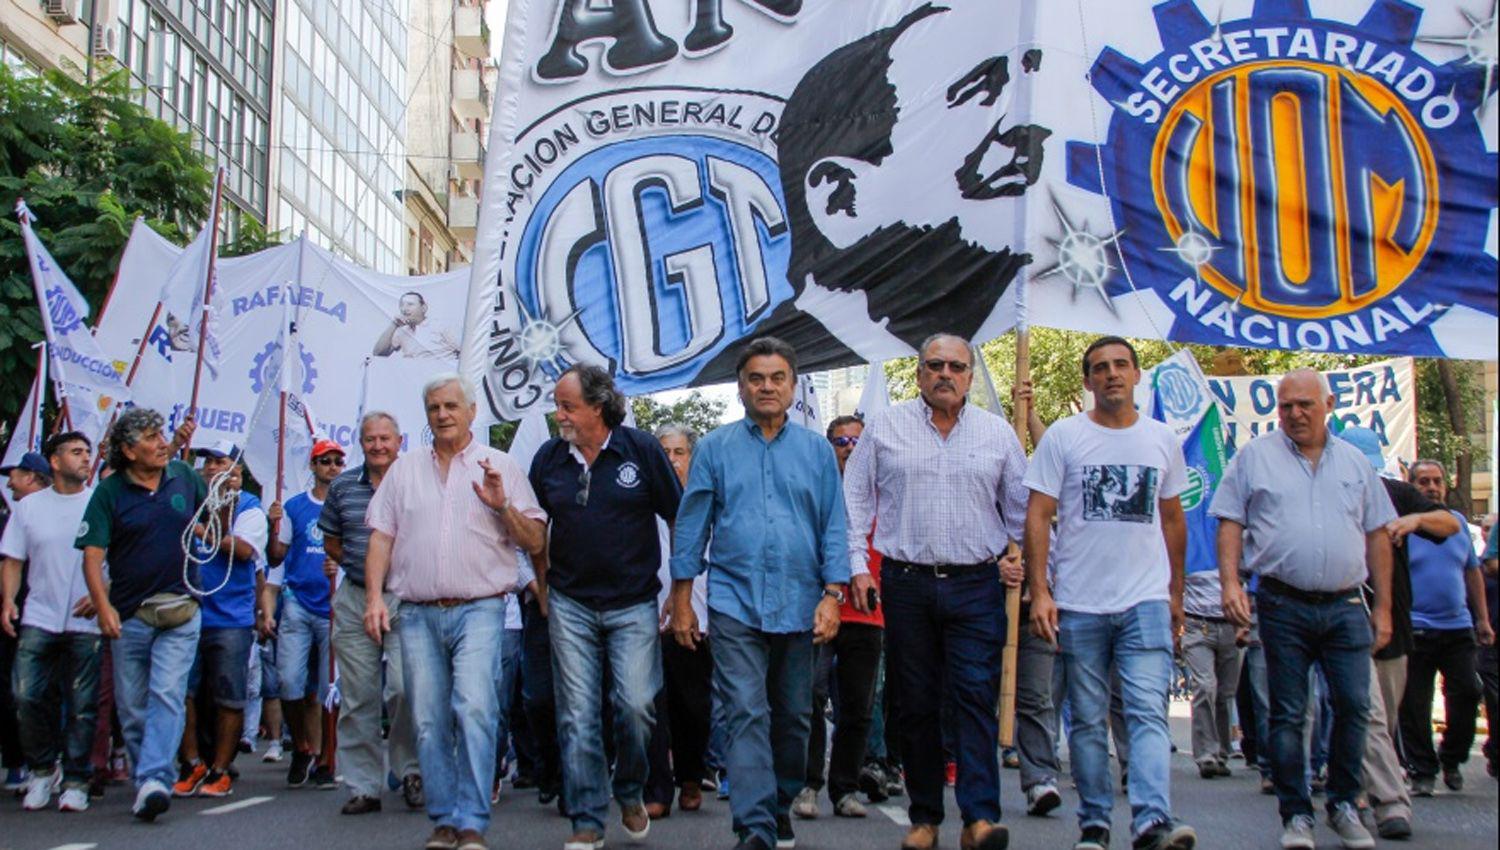 La CGT realiza su acto por el Diacutea de la Lealtad y organizaciones acompantildean con una marcha